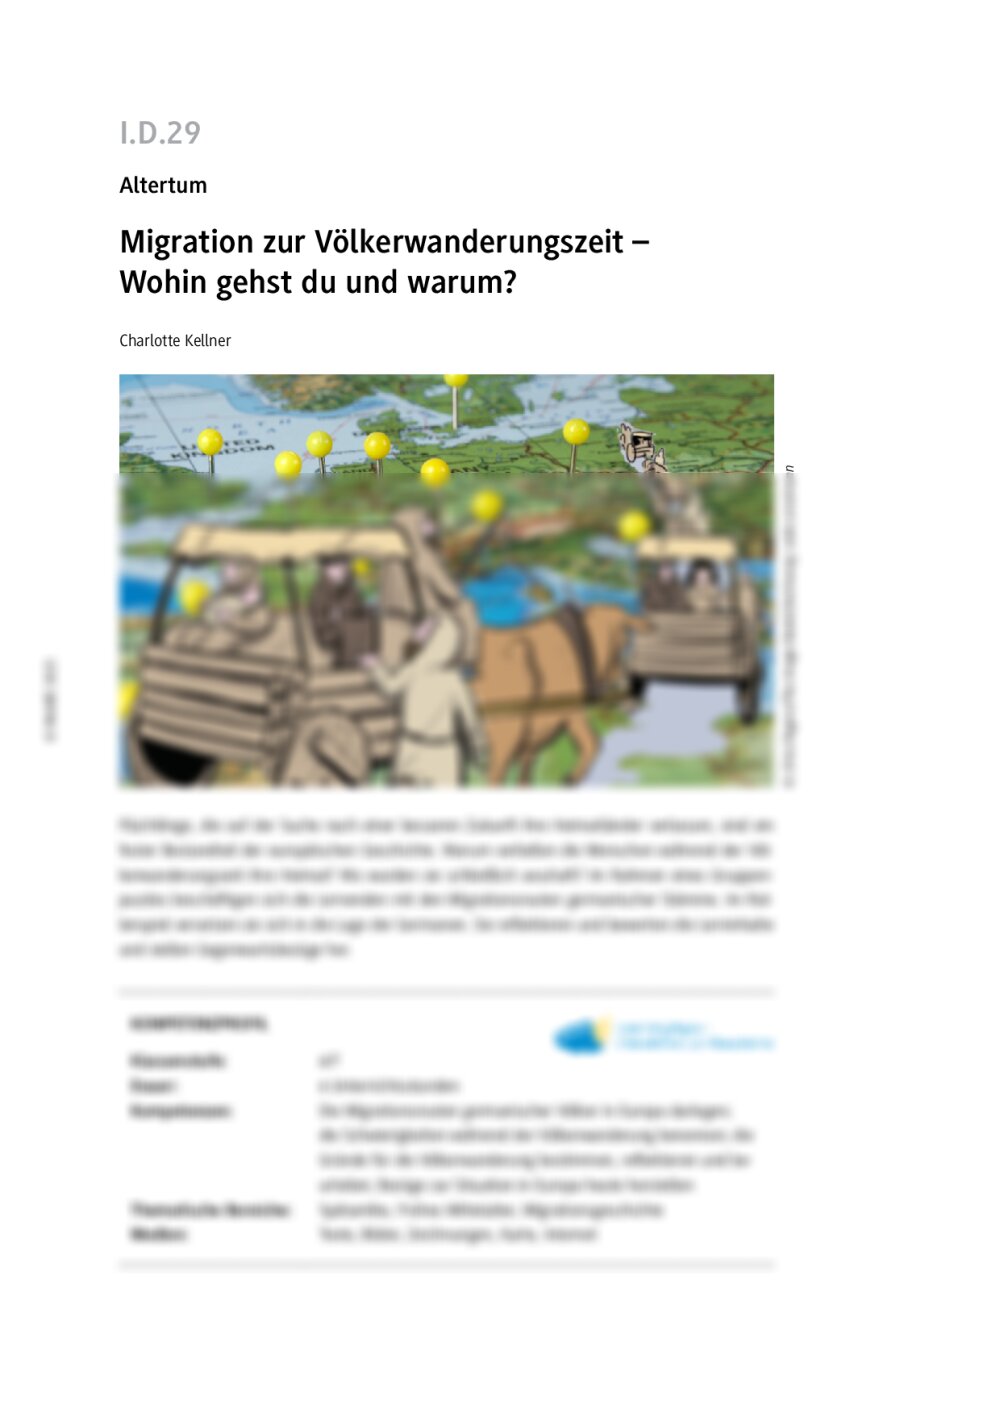 Migration zur Völkerwanderungszeit  - Seite 1